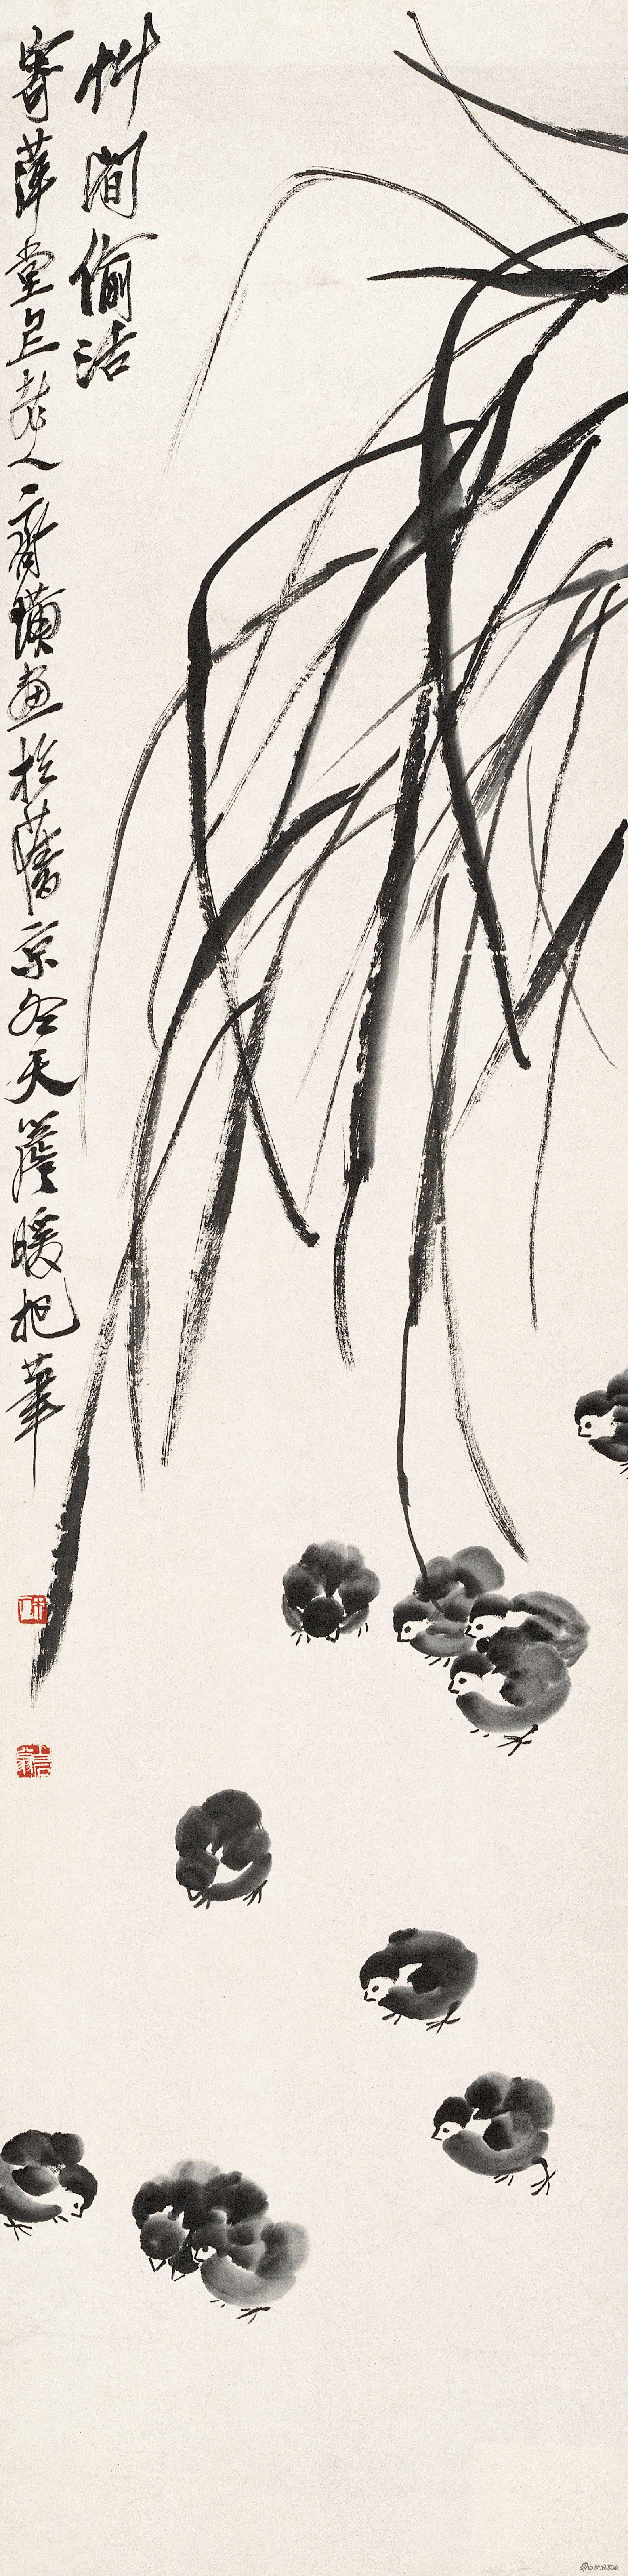 草间偷活 齐白石 137.5cm×34cm 纸本水墨 无年款 北京画院藏